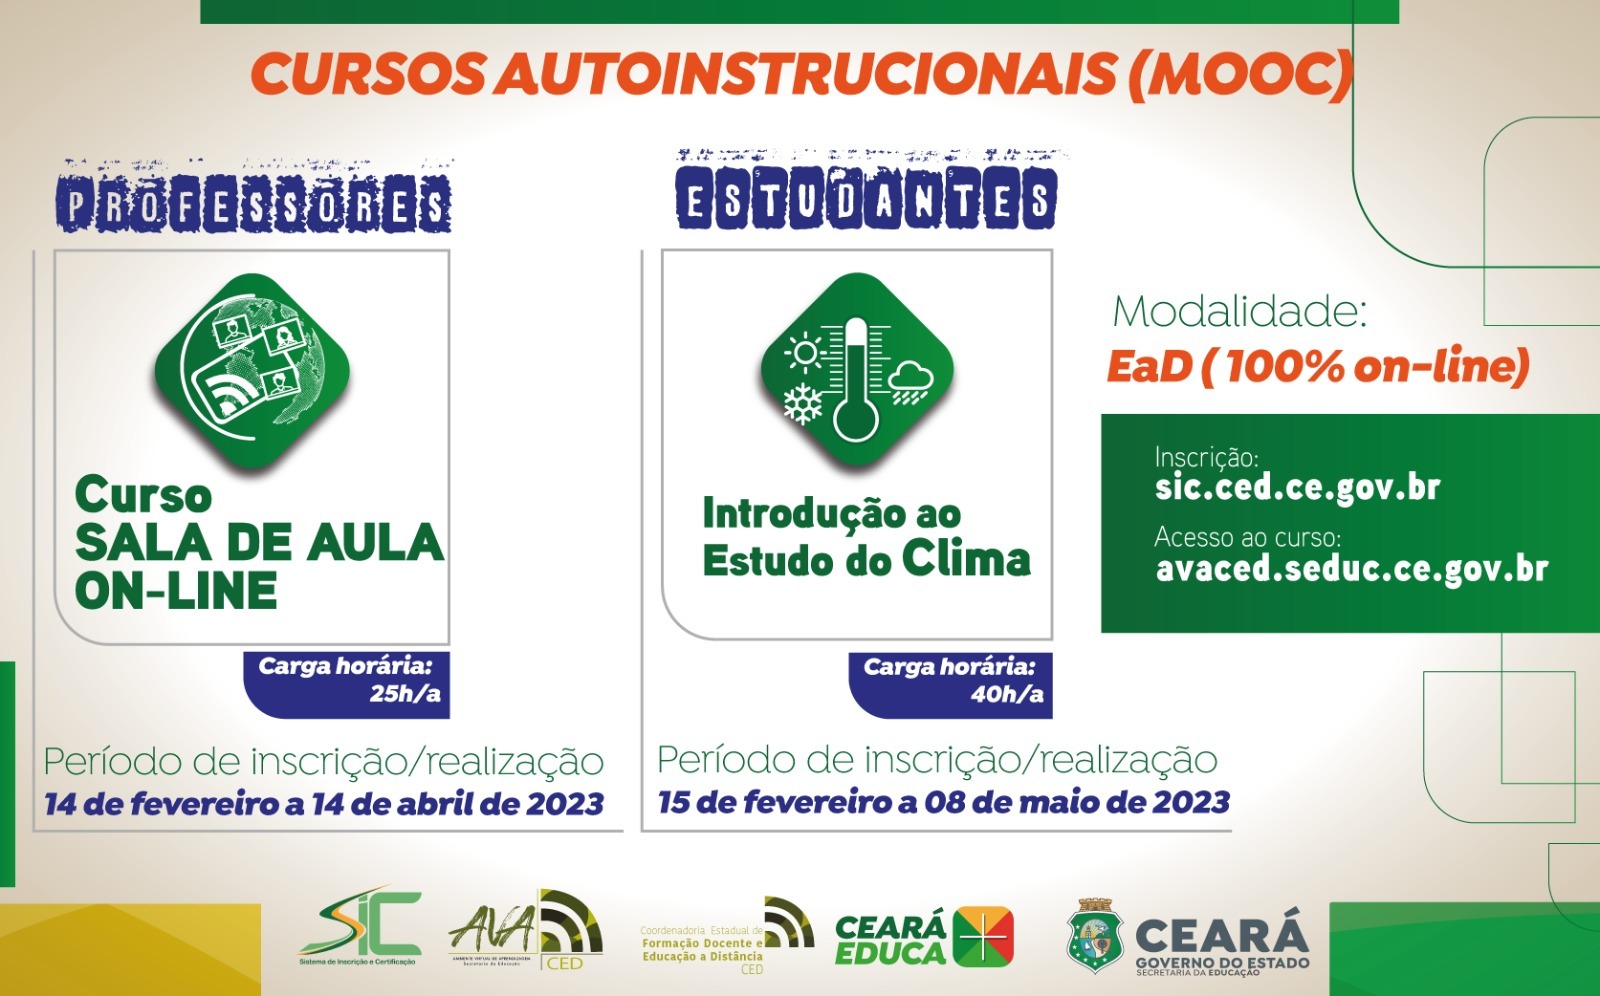 CODED/CED LANÇA CURSO AUTOINSTRUCIONAL (MOOC) PARA PROFESSORAS/ES E ESTUDANTES